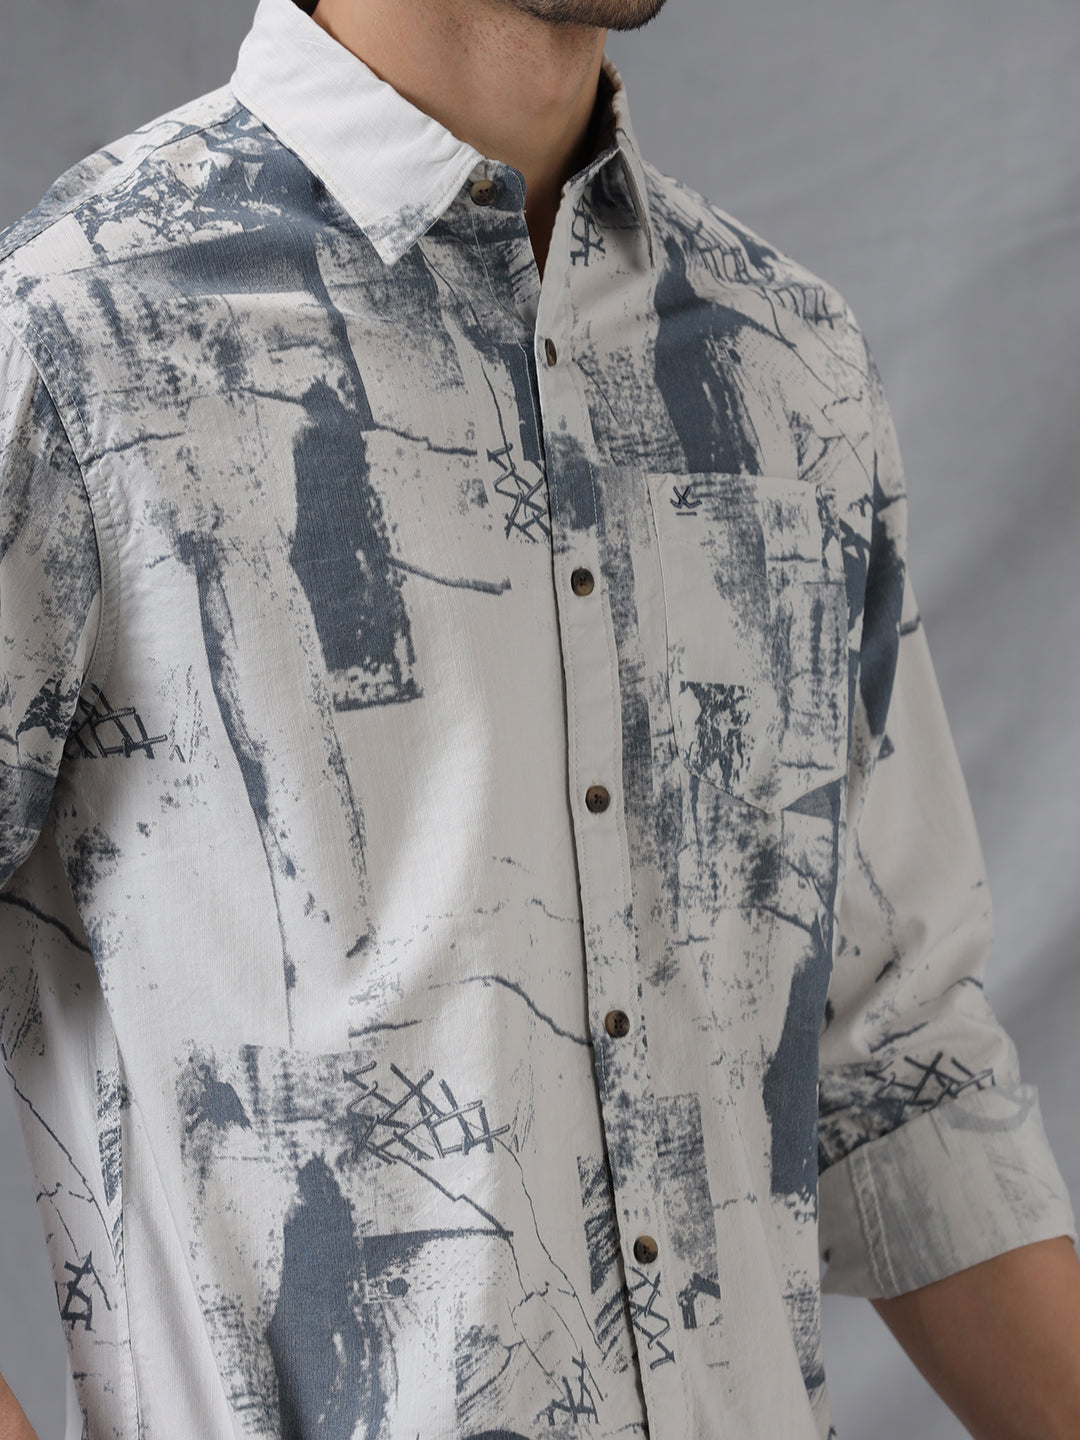 Printed Abstract Grey AOP Shirt